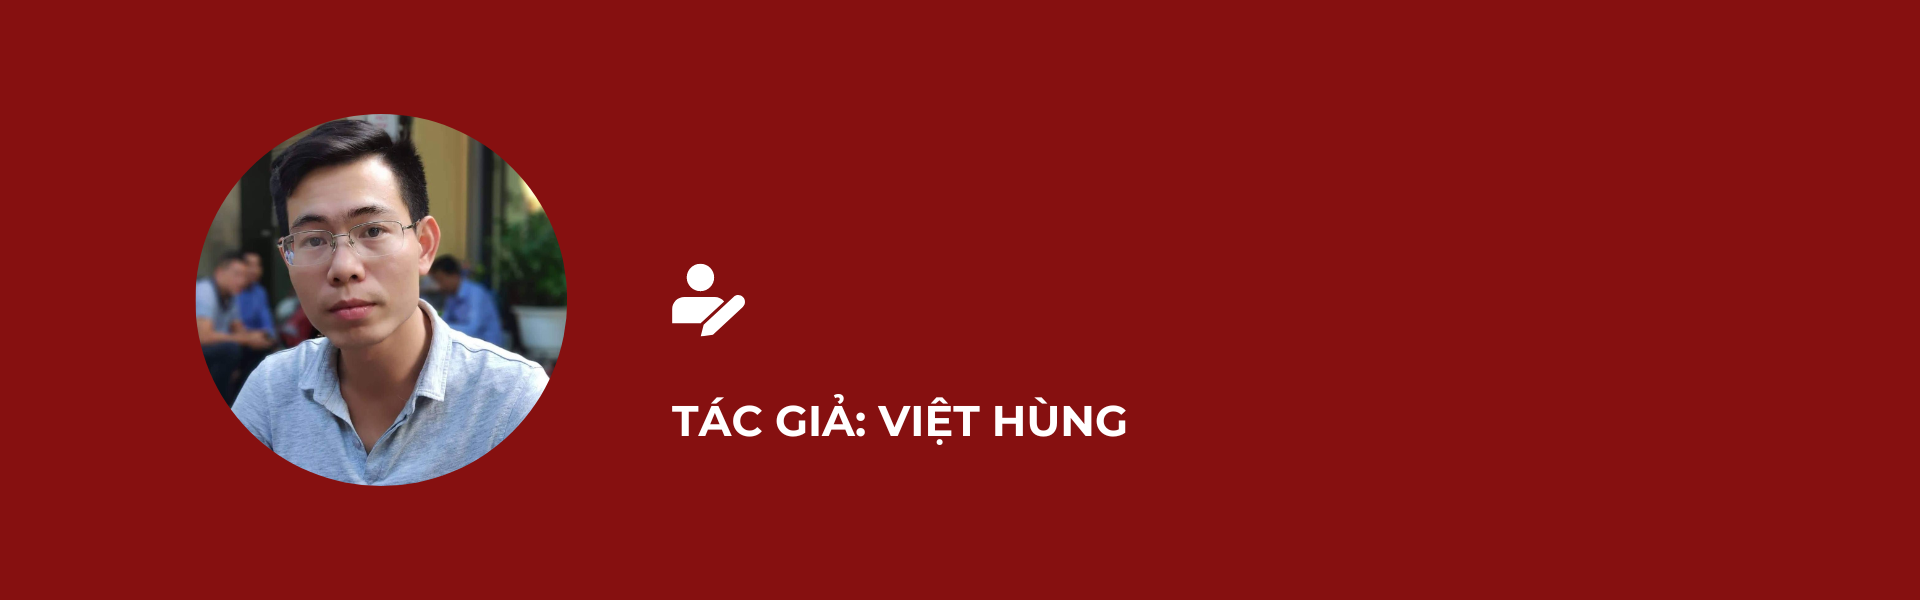 tac-gia-hung-do.png